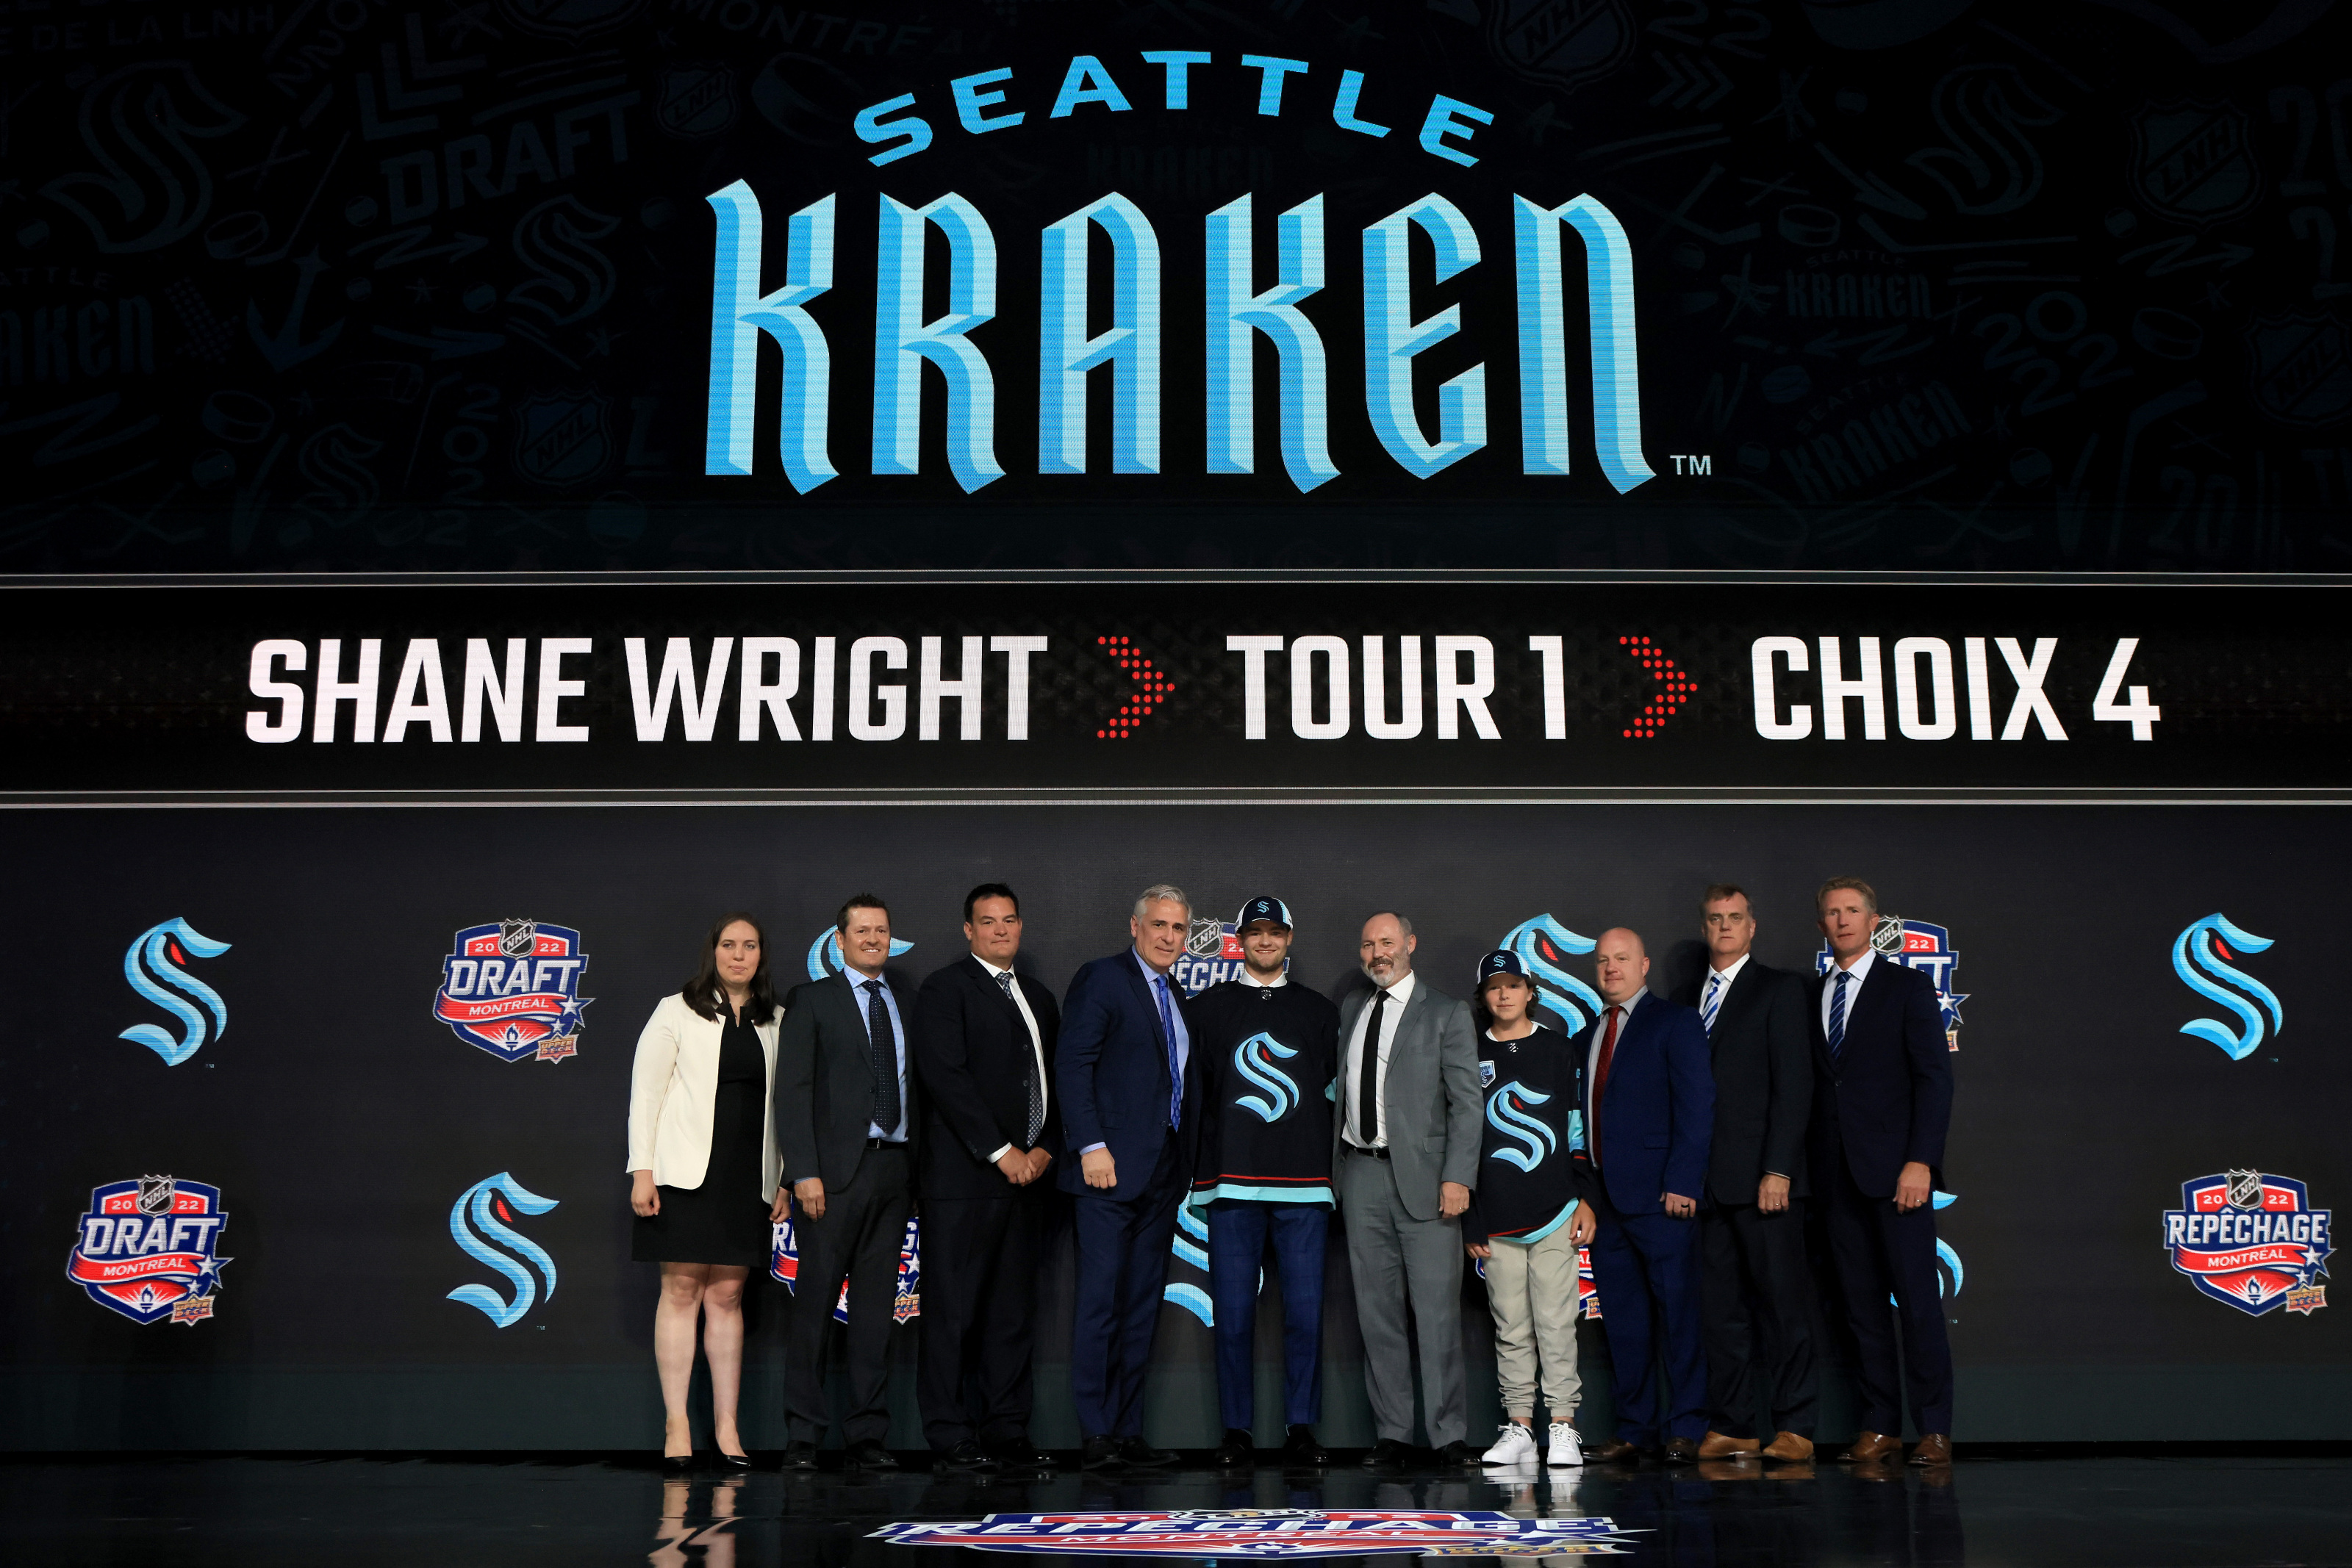 Shane Wright moves past draft slide, looks ahead with Kraken